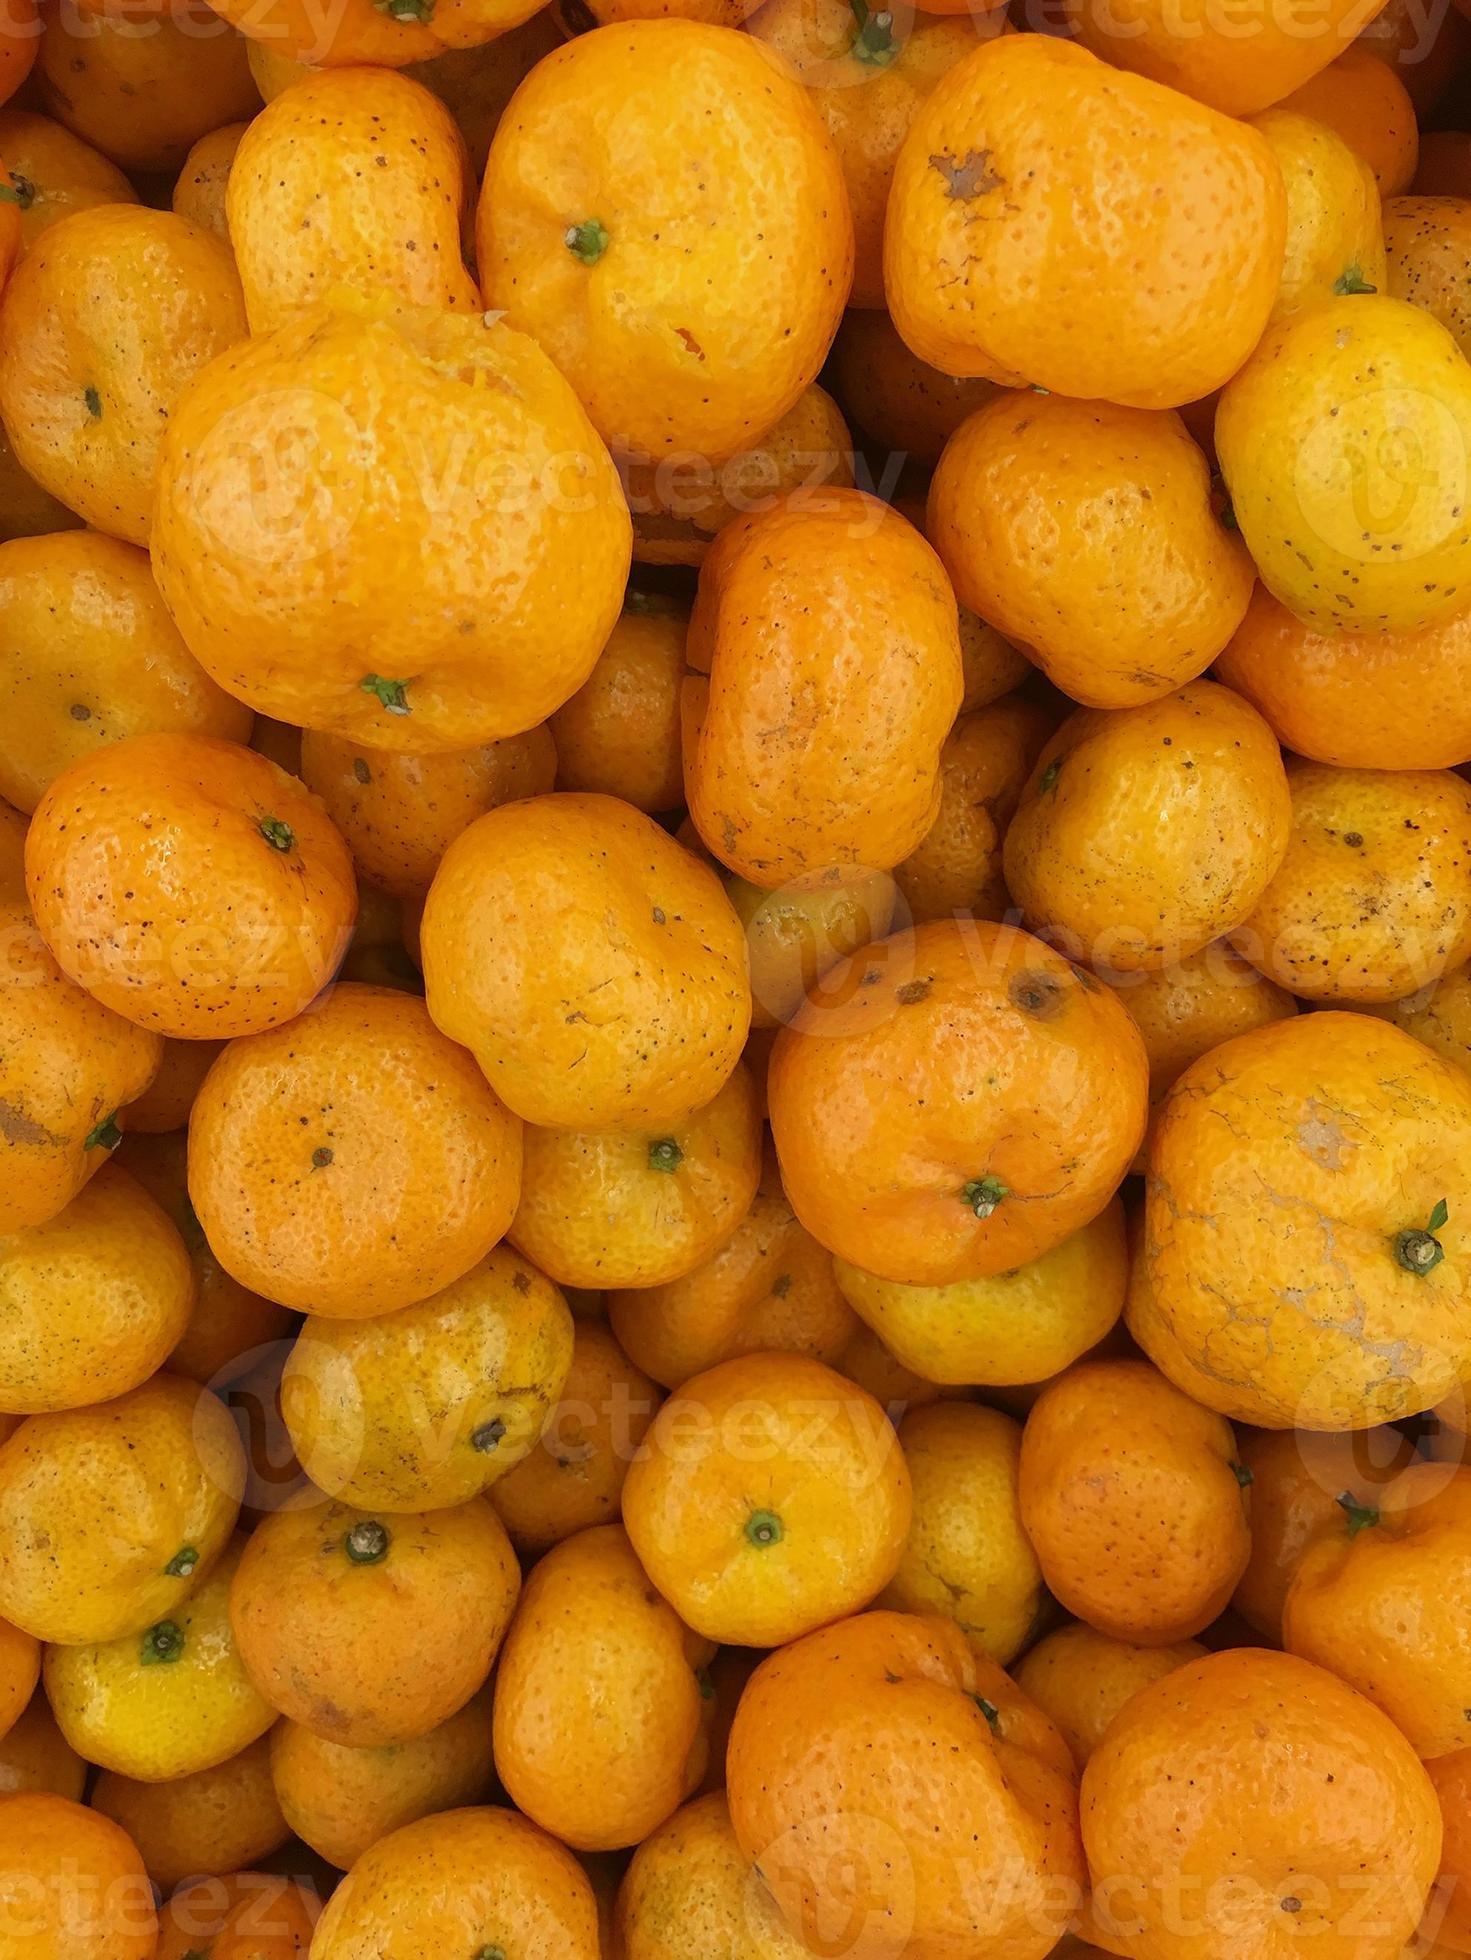 oranges sur l'étal du marché photo